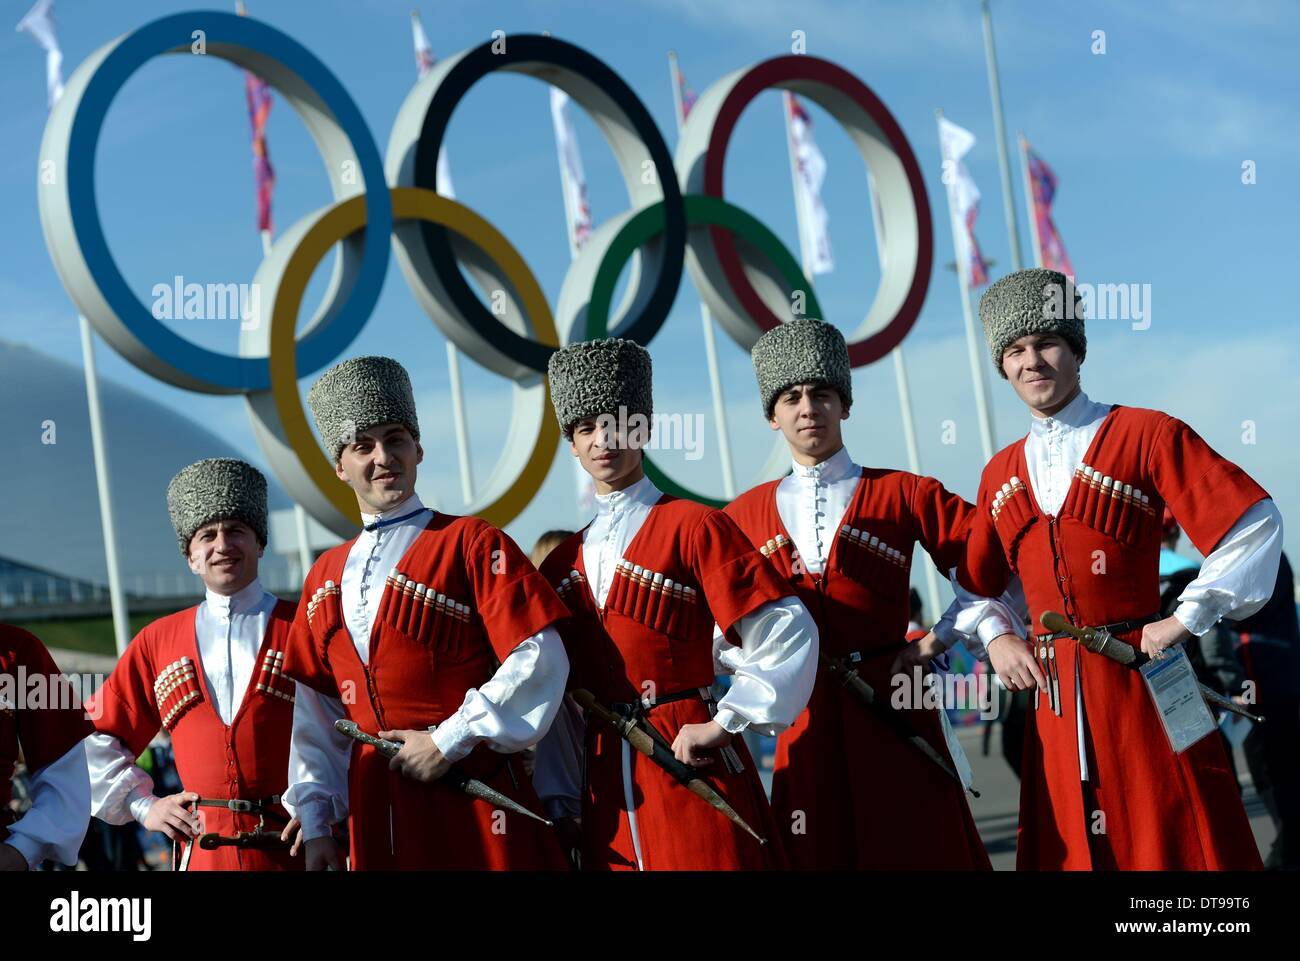 Männer in russische Tracht im Olympiapark bei den Sochi 2014 Olympischen  Spielen, Sotschi, Russland, 12. Februar 2014. Die Olympischen Winterspiele  2014 in Sotschi von 07 bis 23. Februar 2014 laufen. Foto: Frank Mai  Stockfotografie - Alamy